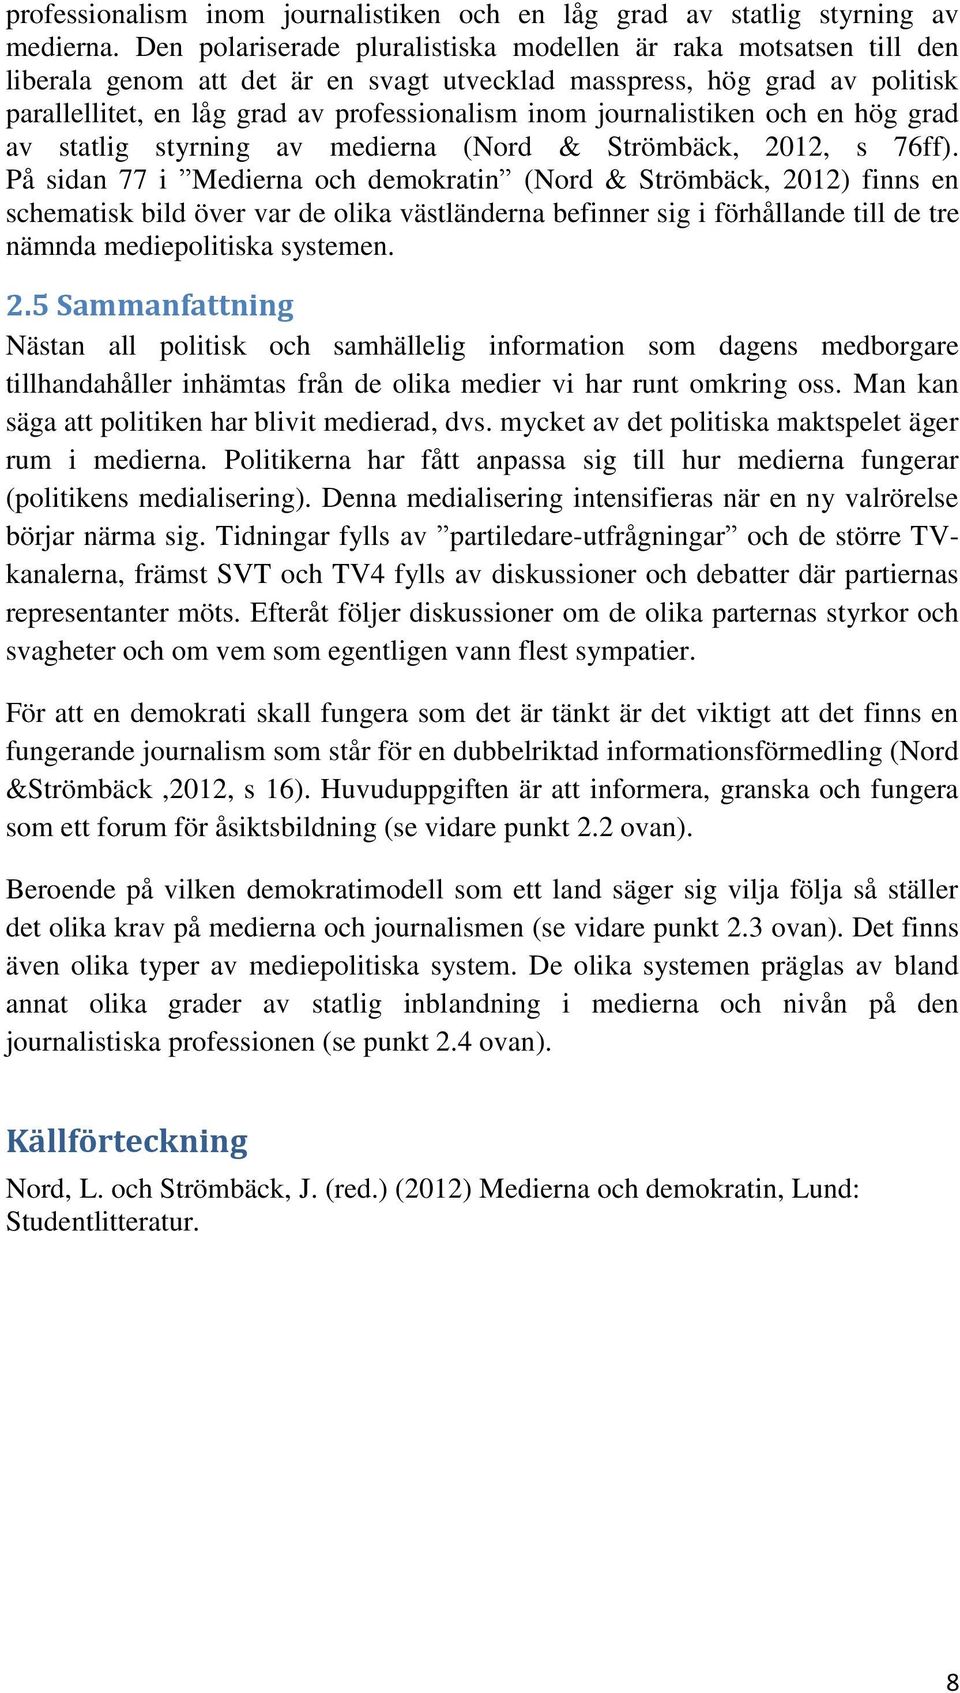 journalistiken och en hög grad av statlig styrning av medierna (Nord & Strömbäck, 2012, s 76ff).